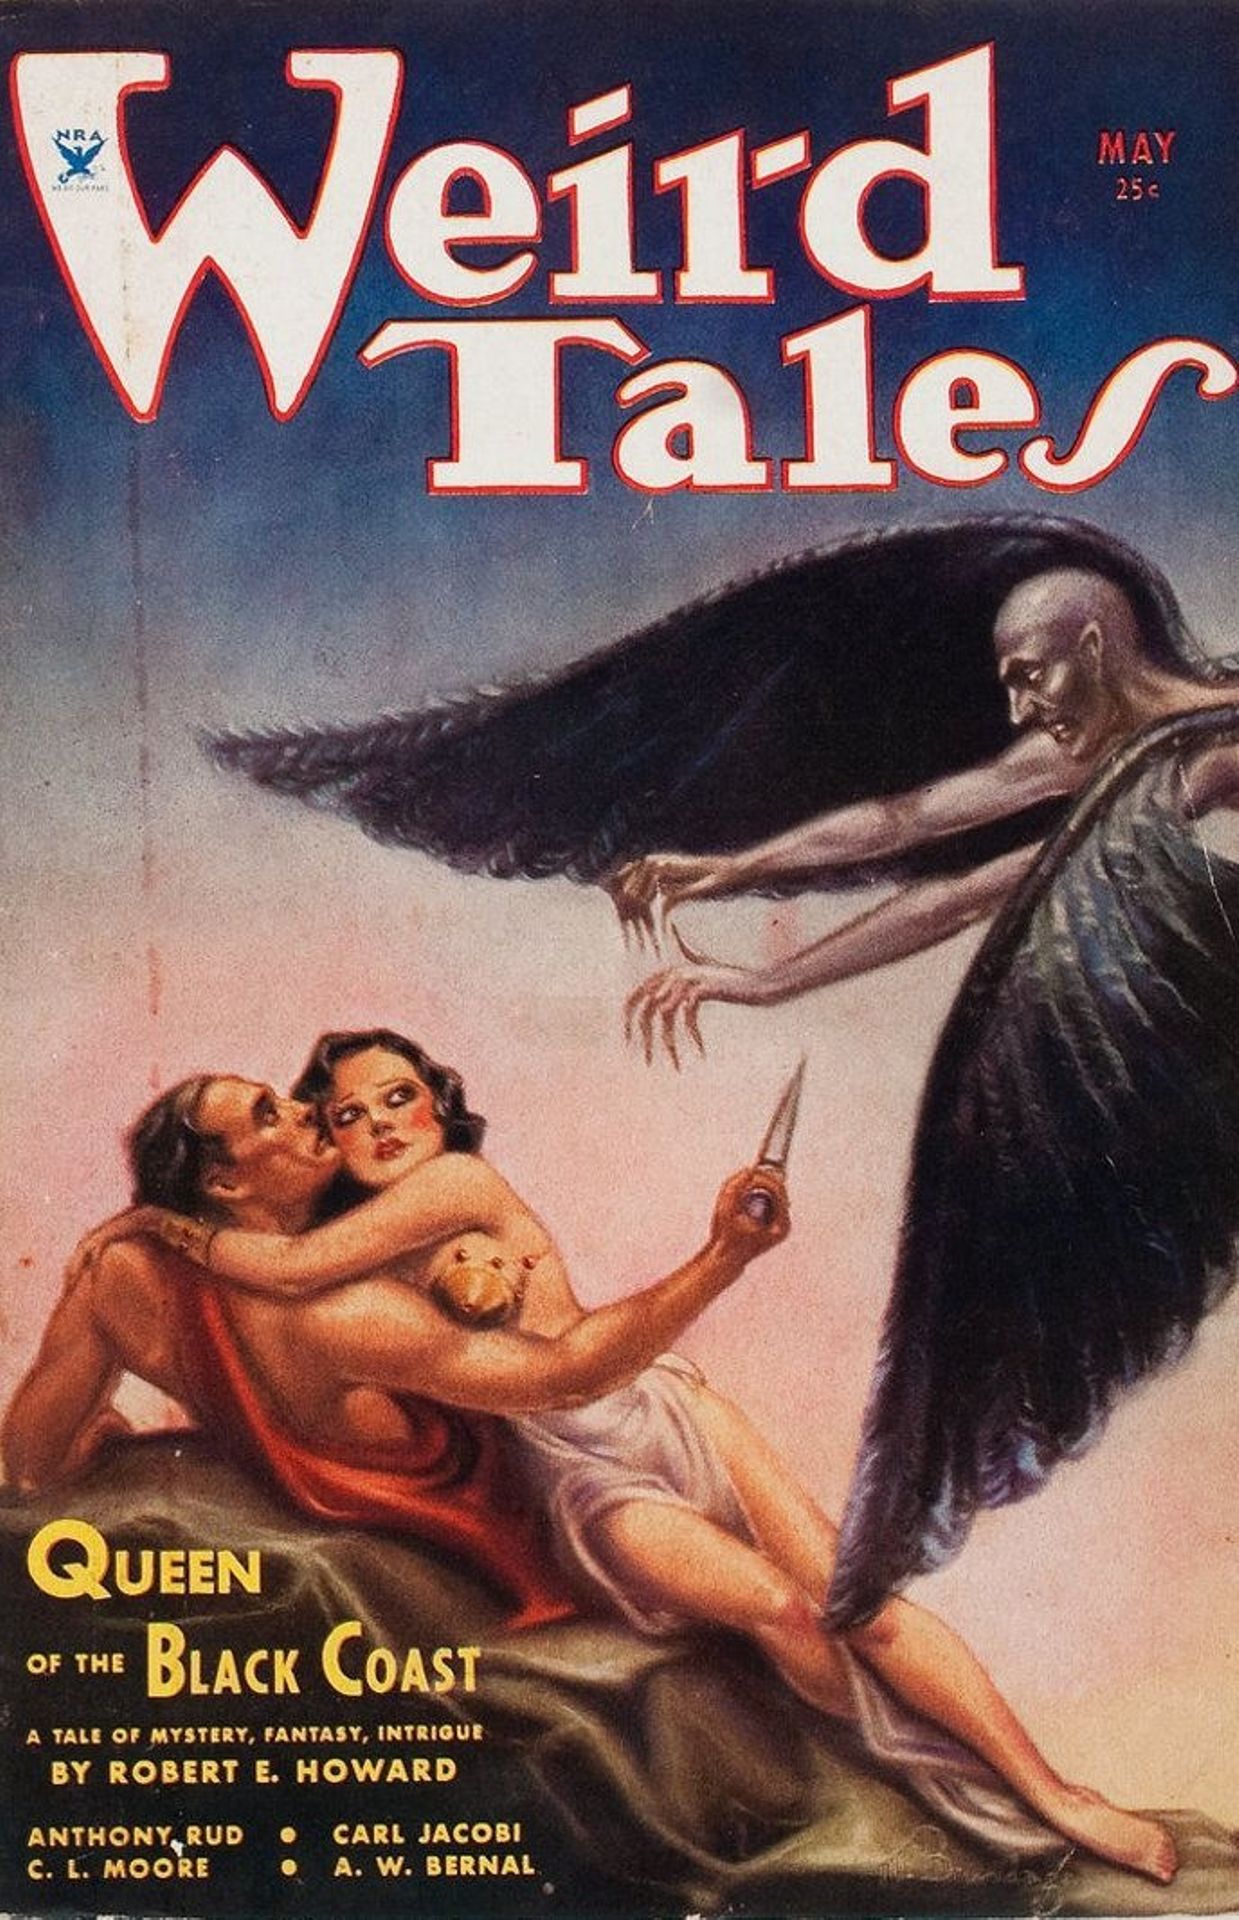 "Weird tales" le magazine qui publie les aventures de Conan le Cimmérien de Robert E. Howard